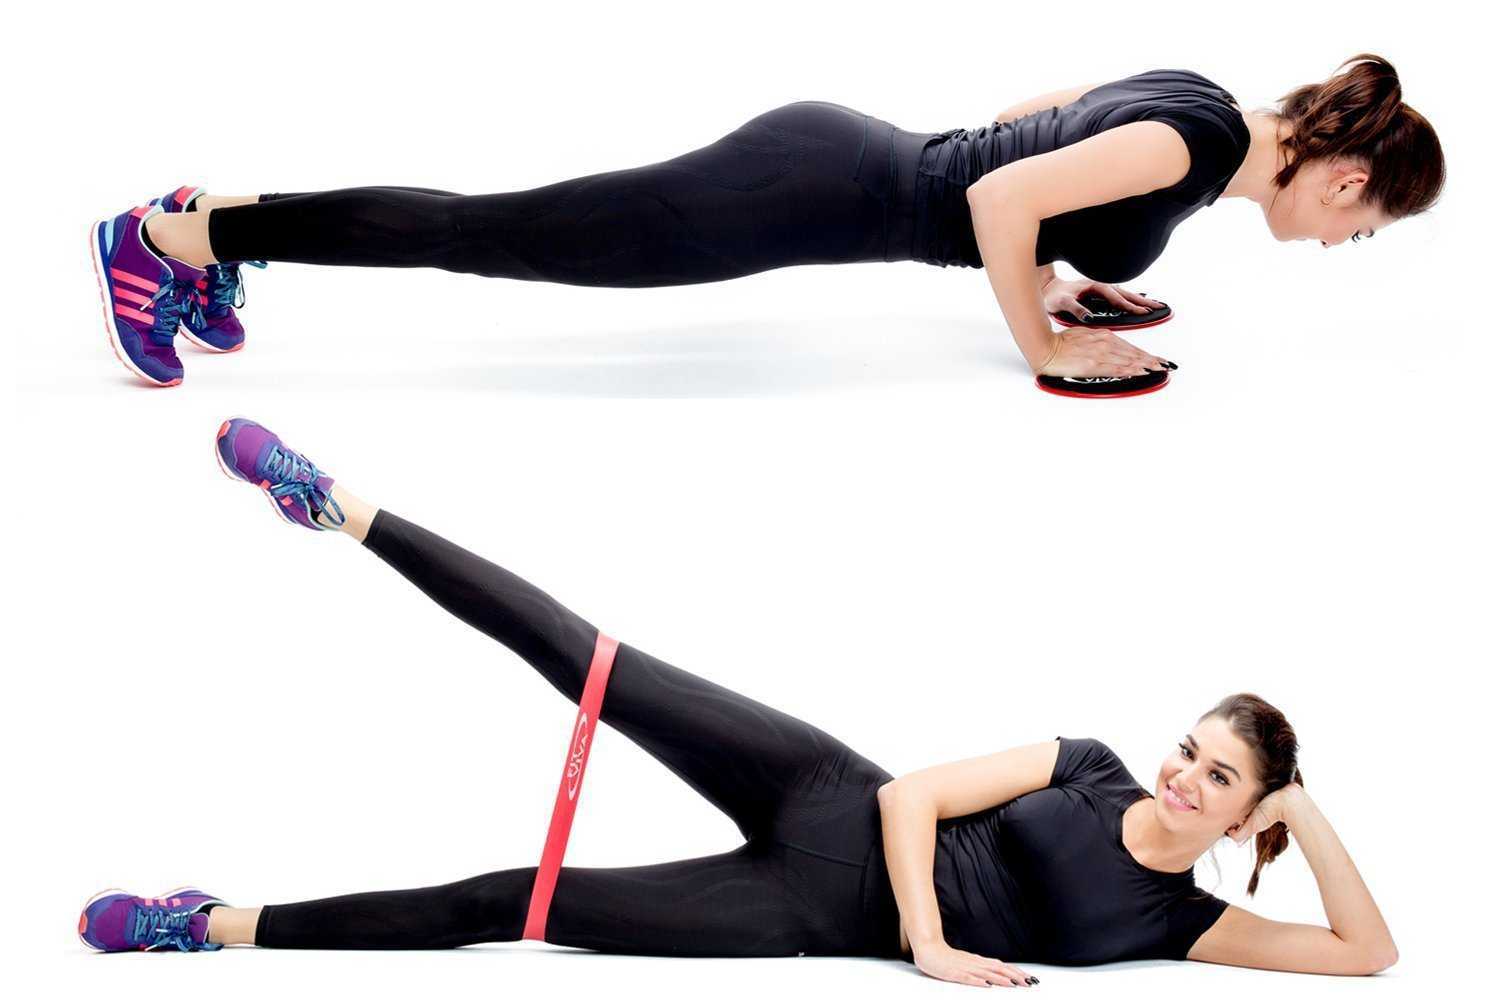 Упражнения с фитнес резинкой - виды тренировок для ног, рук, спины, ягодиц и пресса